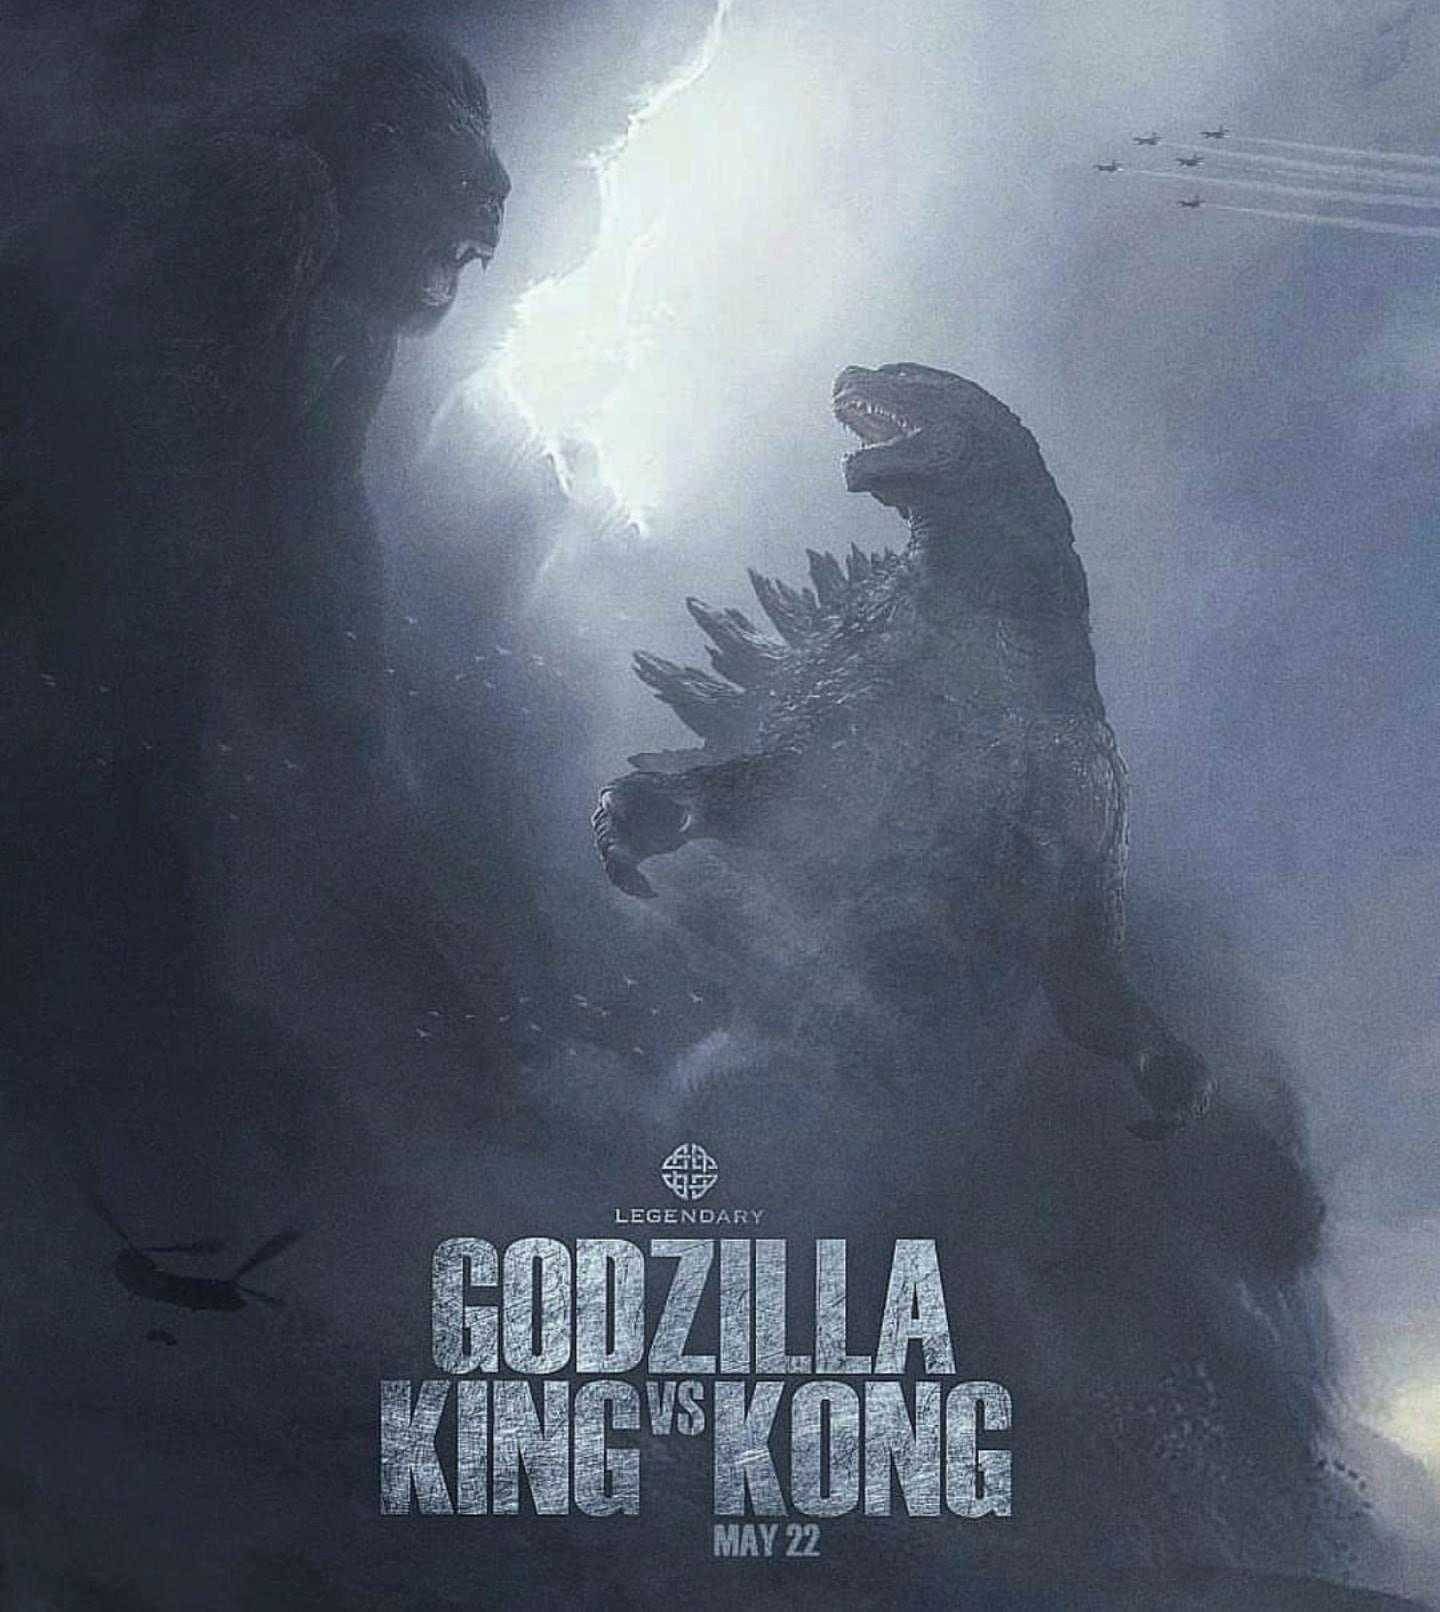 Baixe Papéis De Parede De Godzilla Vs Kong 2021 Grátis 100 Papéis De Parede De Godzilla Vs